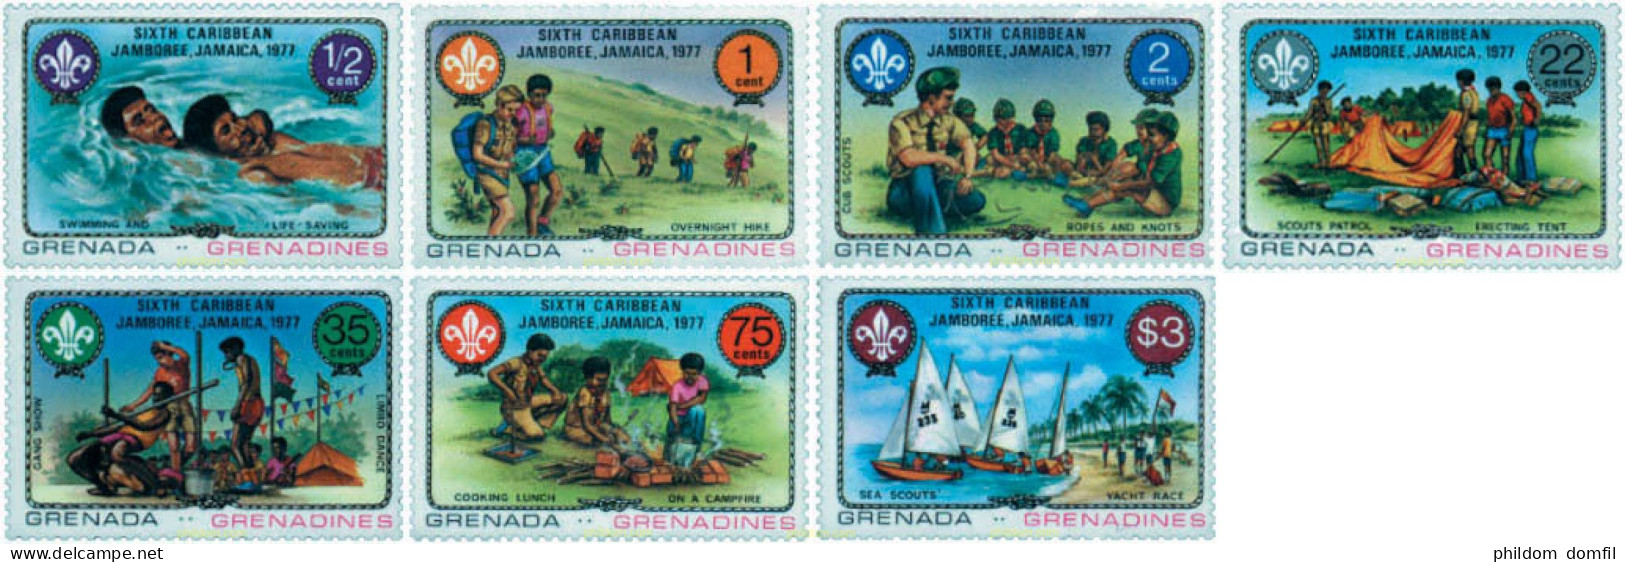 38642 MNH GRANADA GRANADINAS 1977 6 JAMBOREE DEL CARIBE EN JAMAICA - Grenade (1974-...)